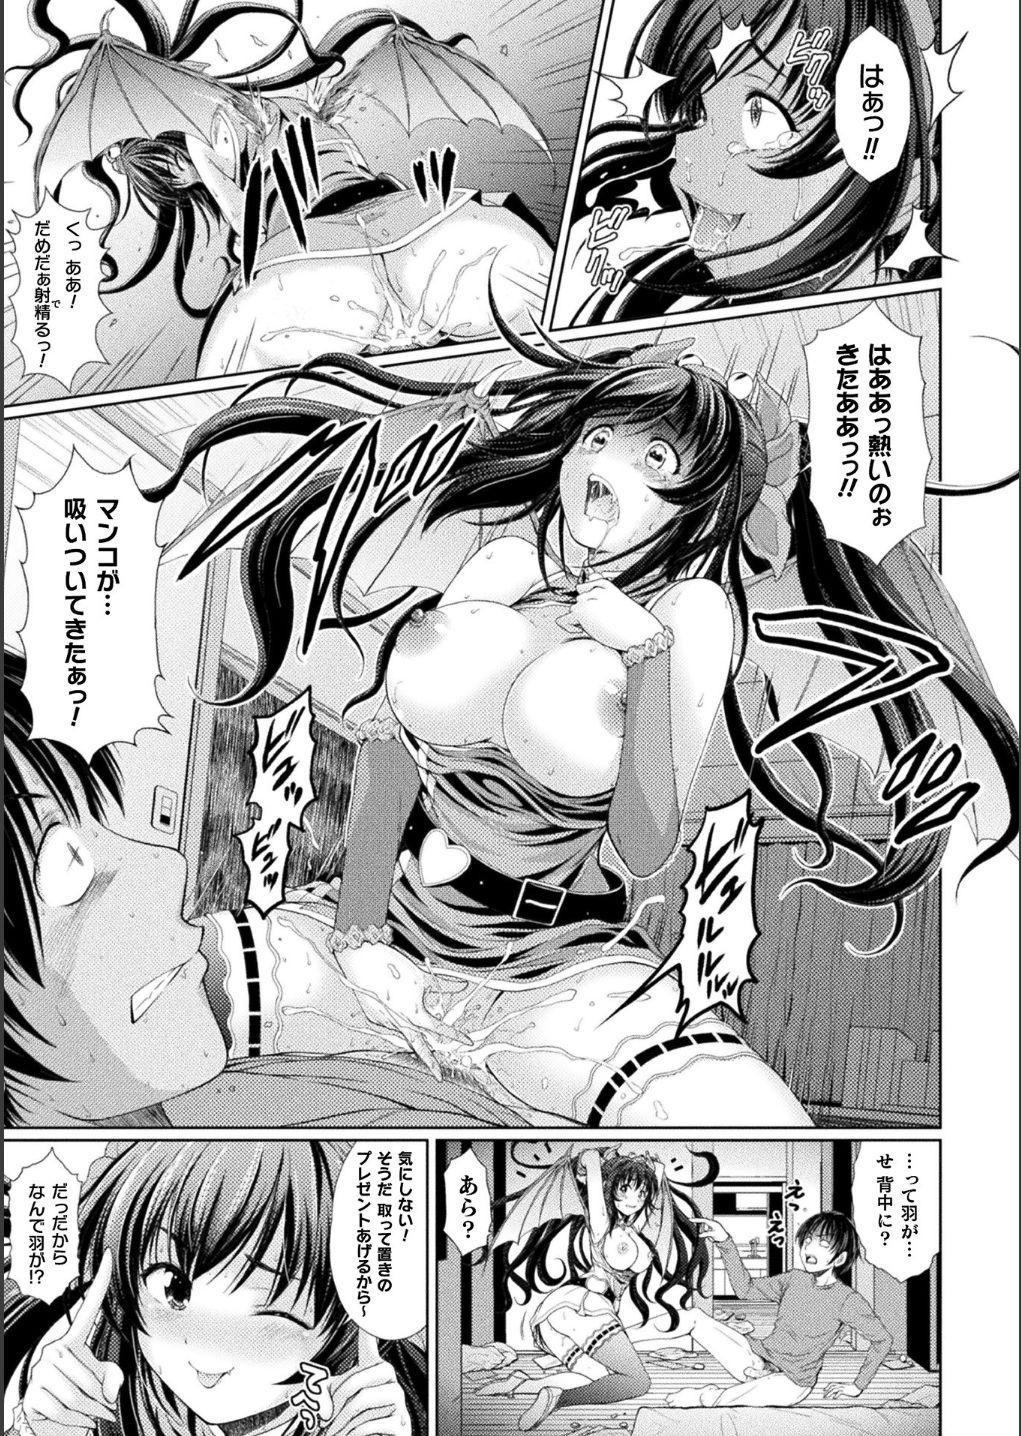 Bessatsu Comic Unreal Bishoujo ni Gitai suru Igyou-tachi Digital Ban Vol. 1 12